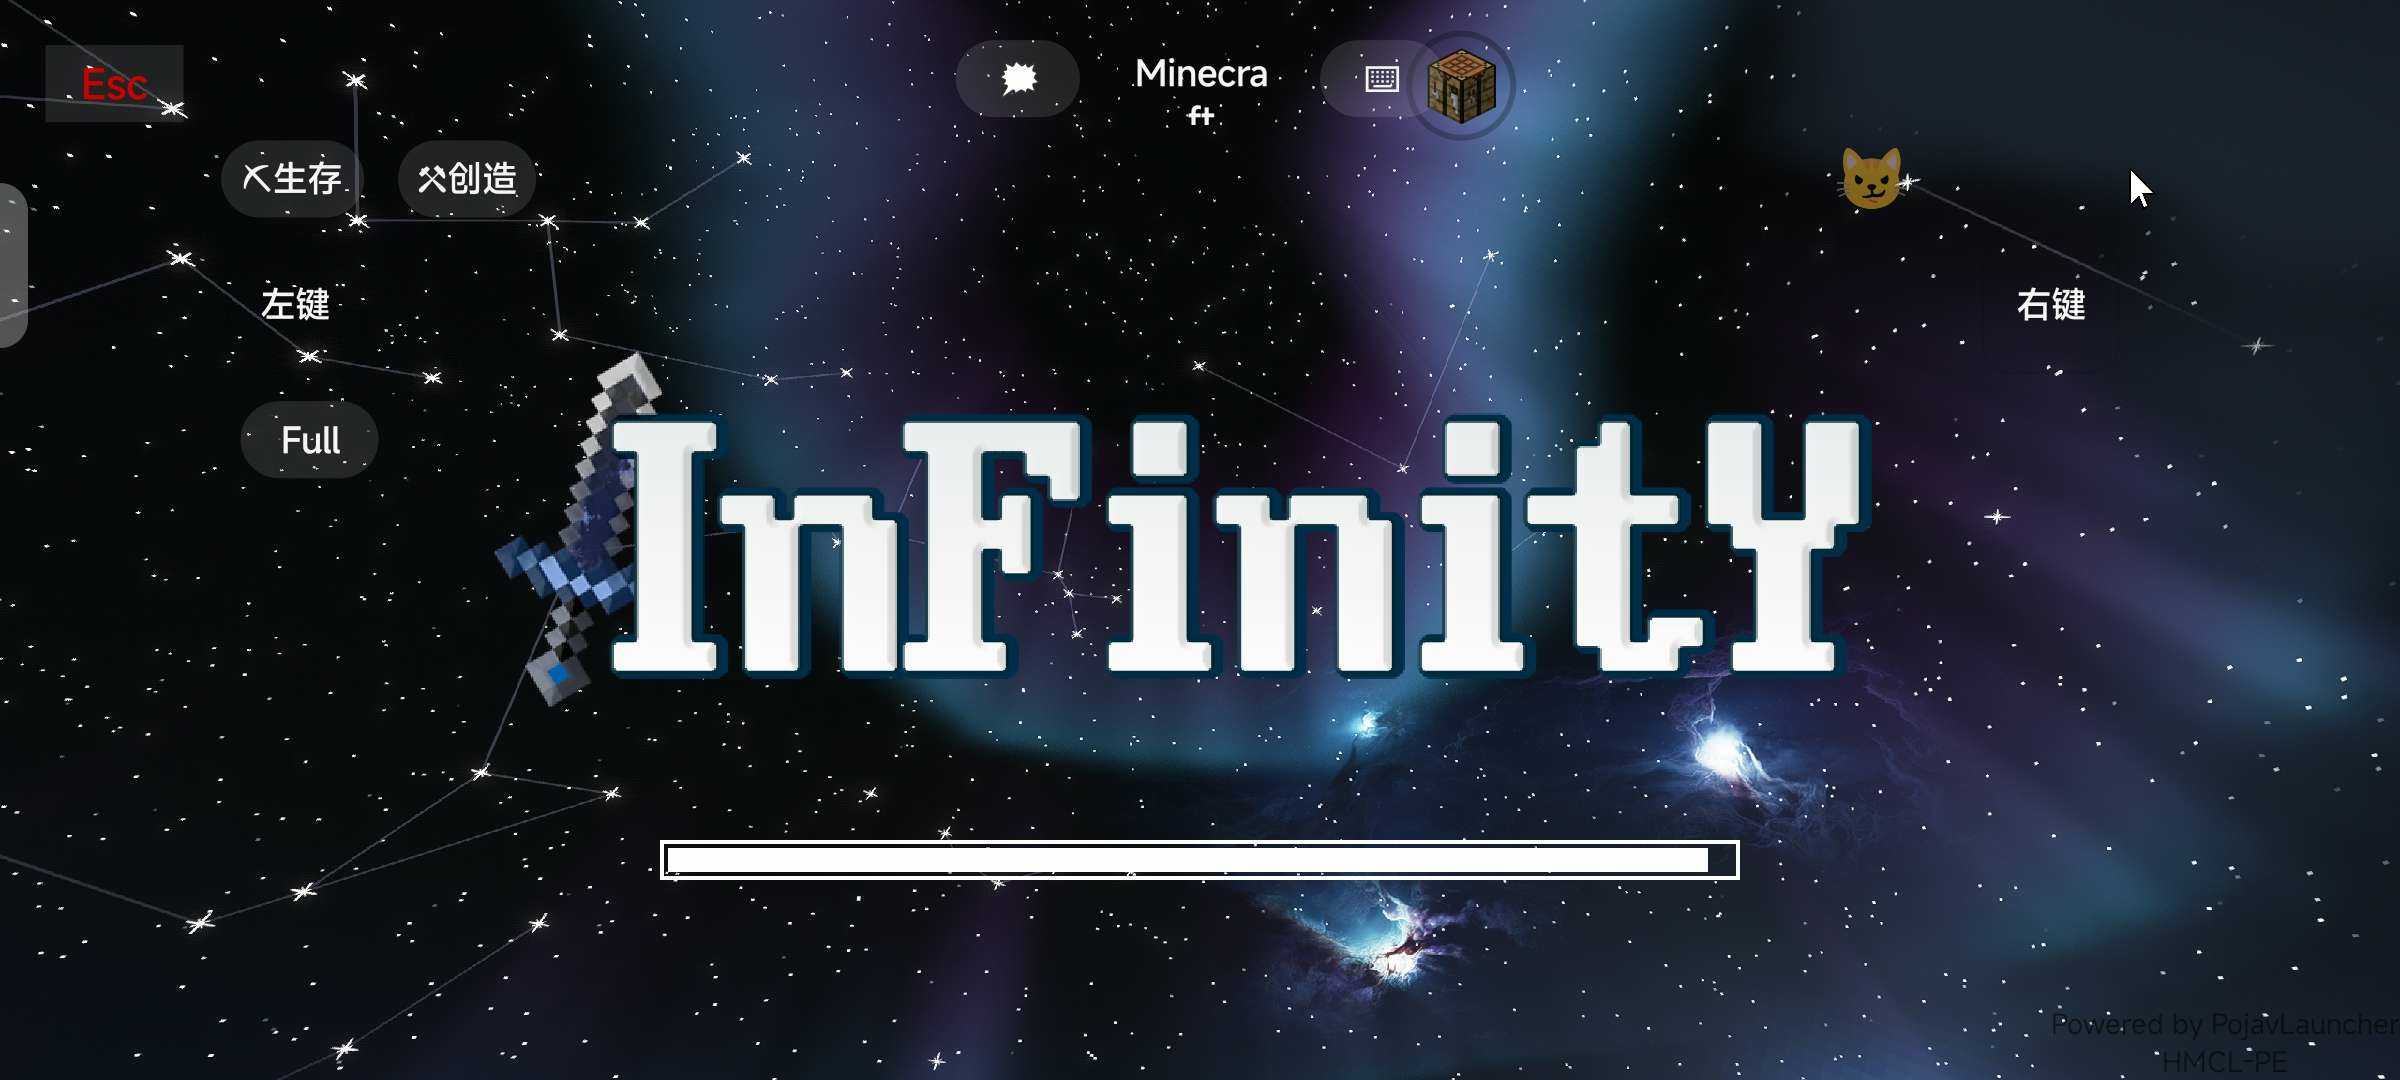 我的世界无限infinity模组v1.0.0 手机版